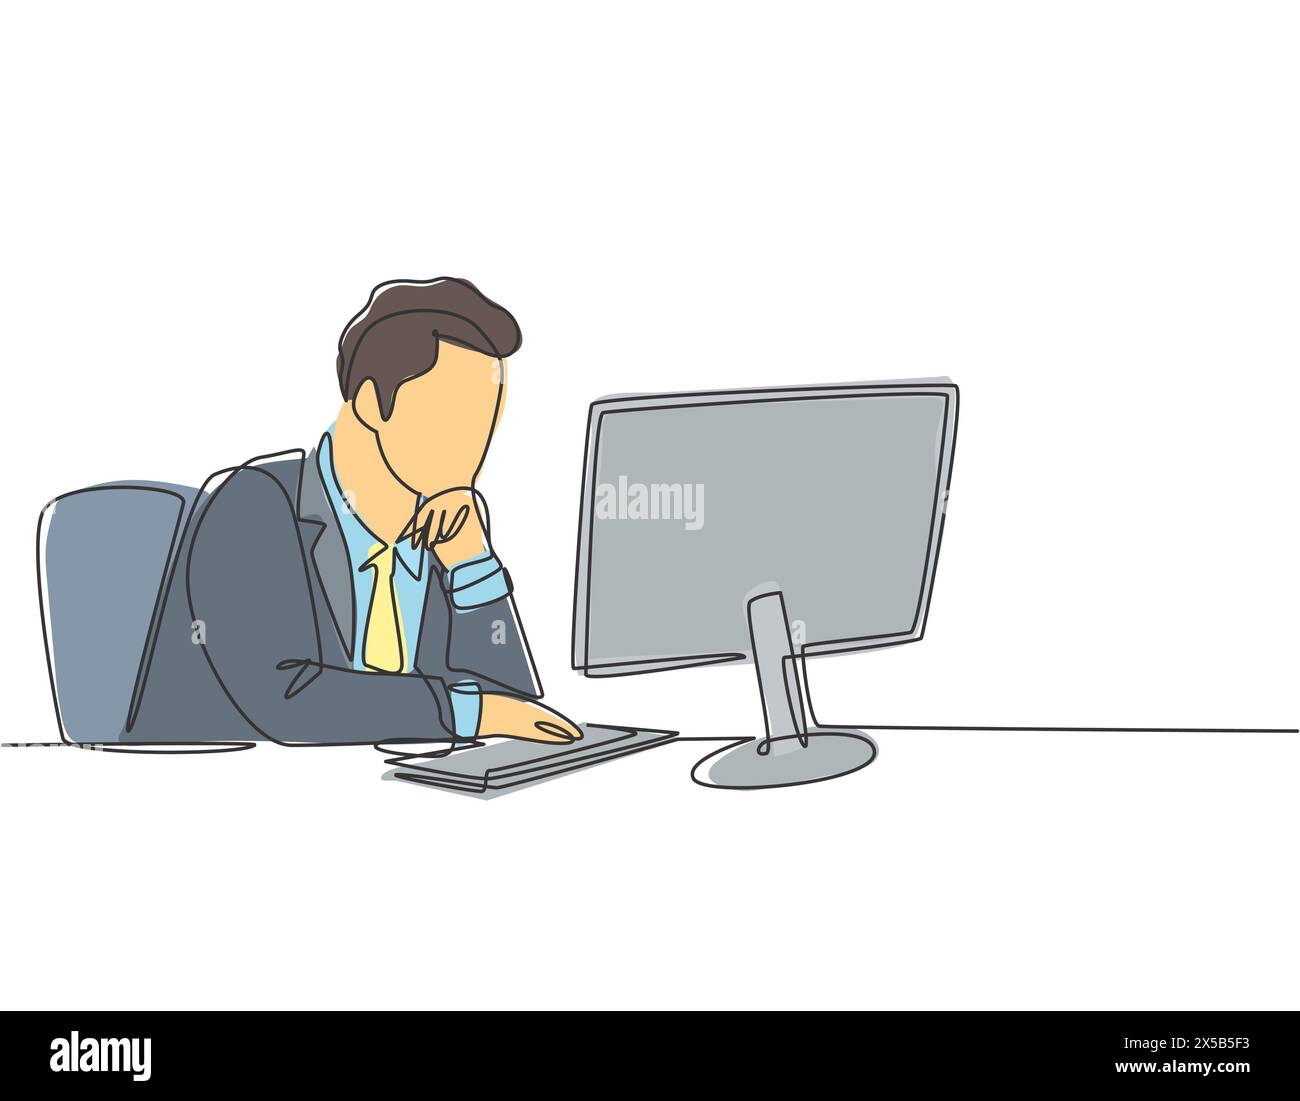 Dessin en ligne continue unique de jeune Manager masculin assis sur sa chaise et pensant sérieusement regarder l'écran d'ordinateur. Analyse commerciale conceps Illustration de Vecteur